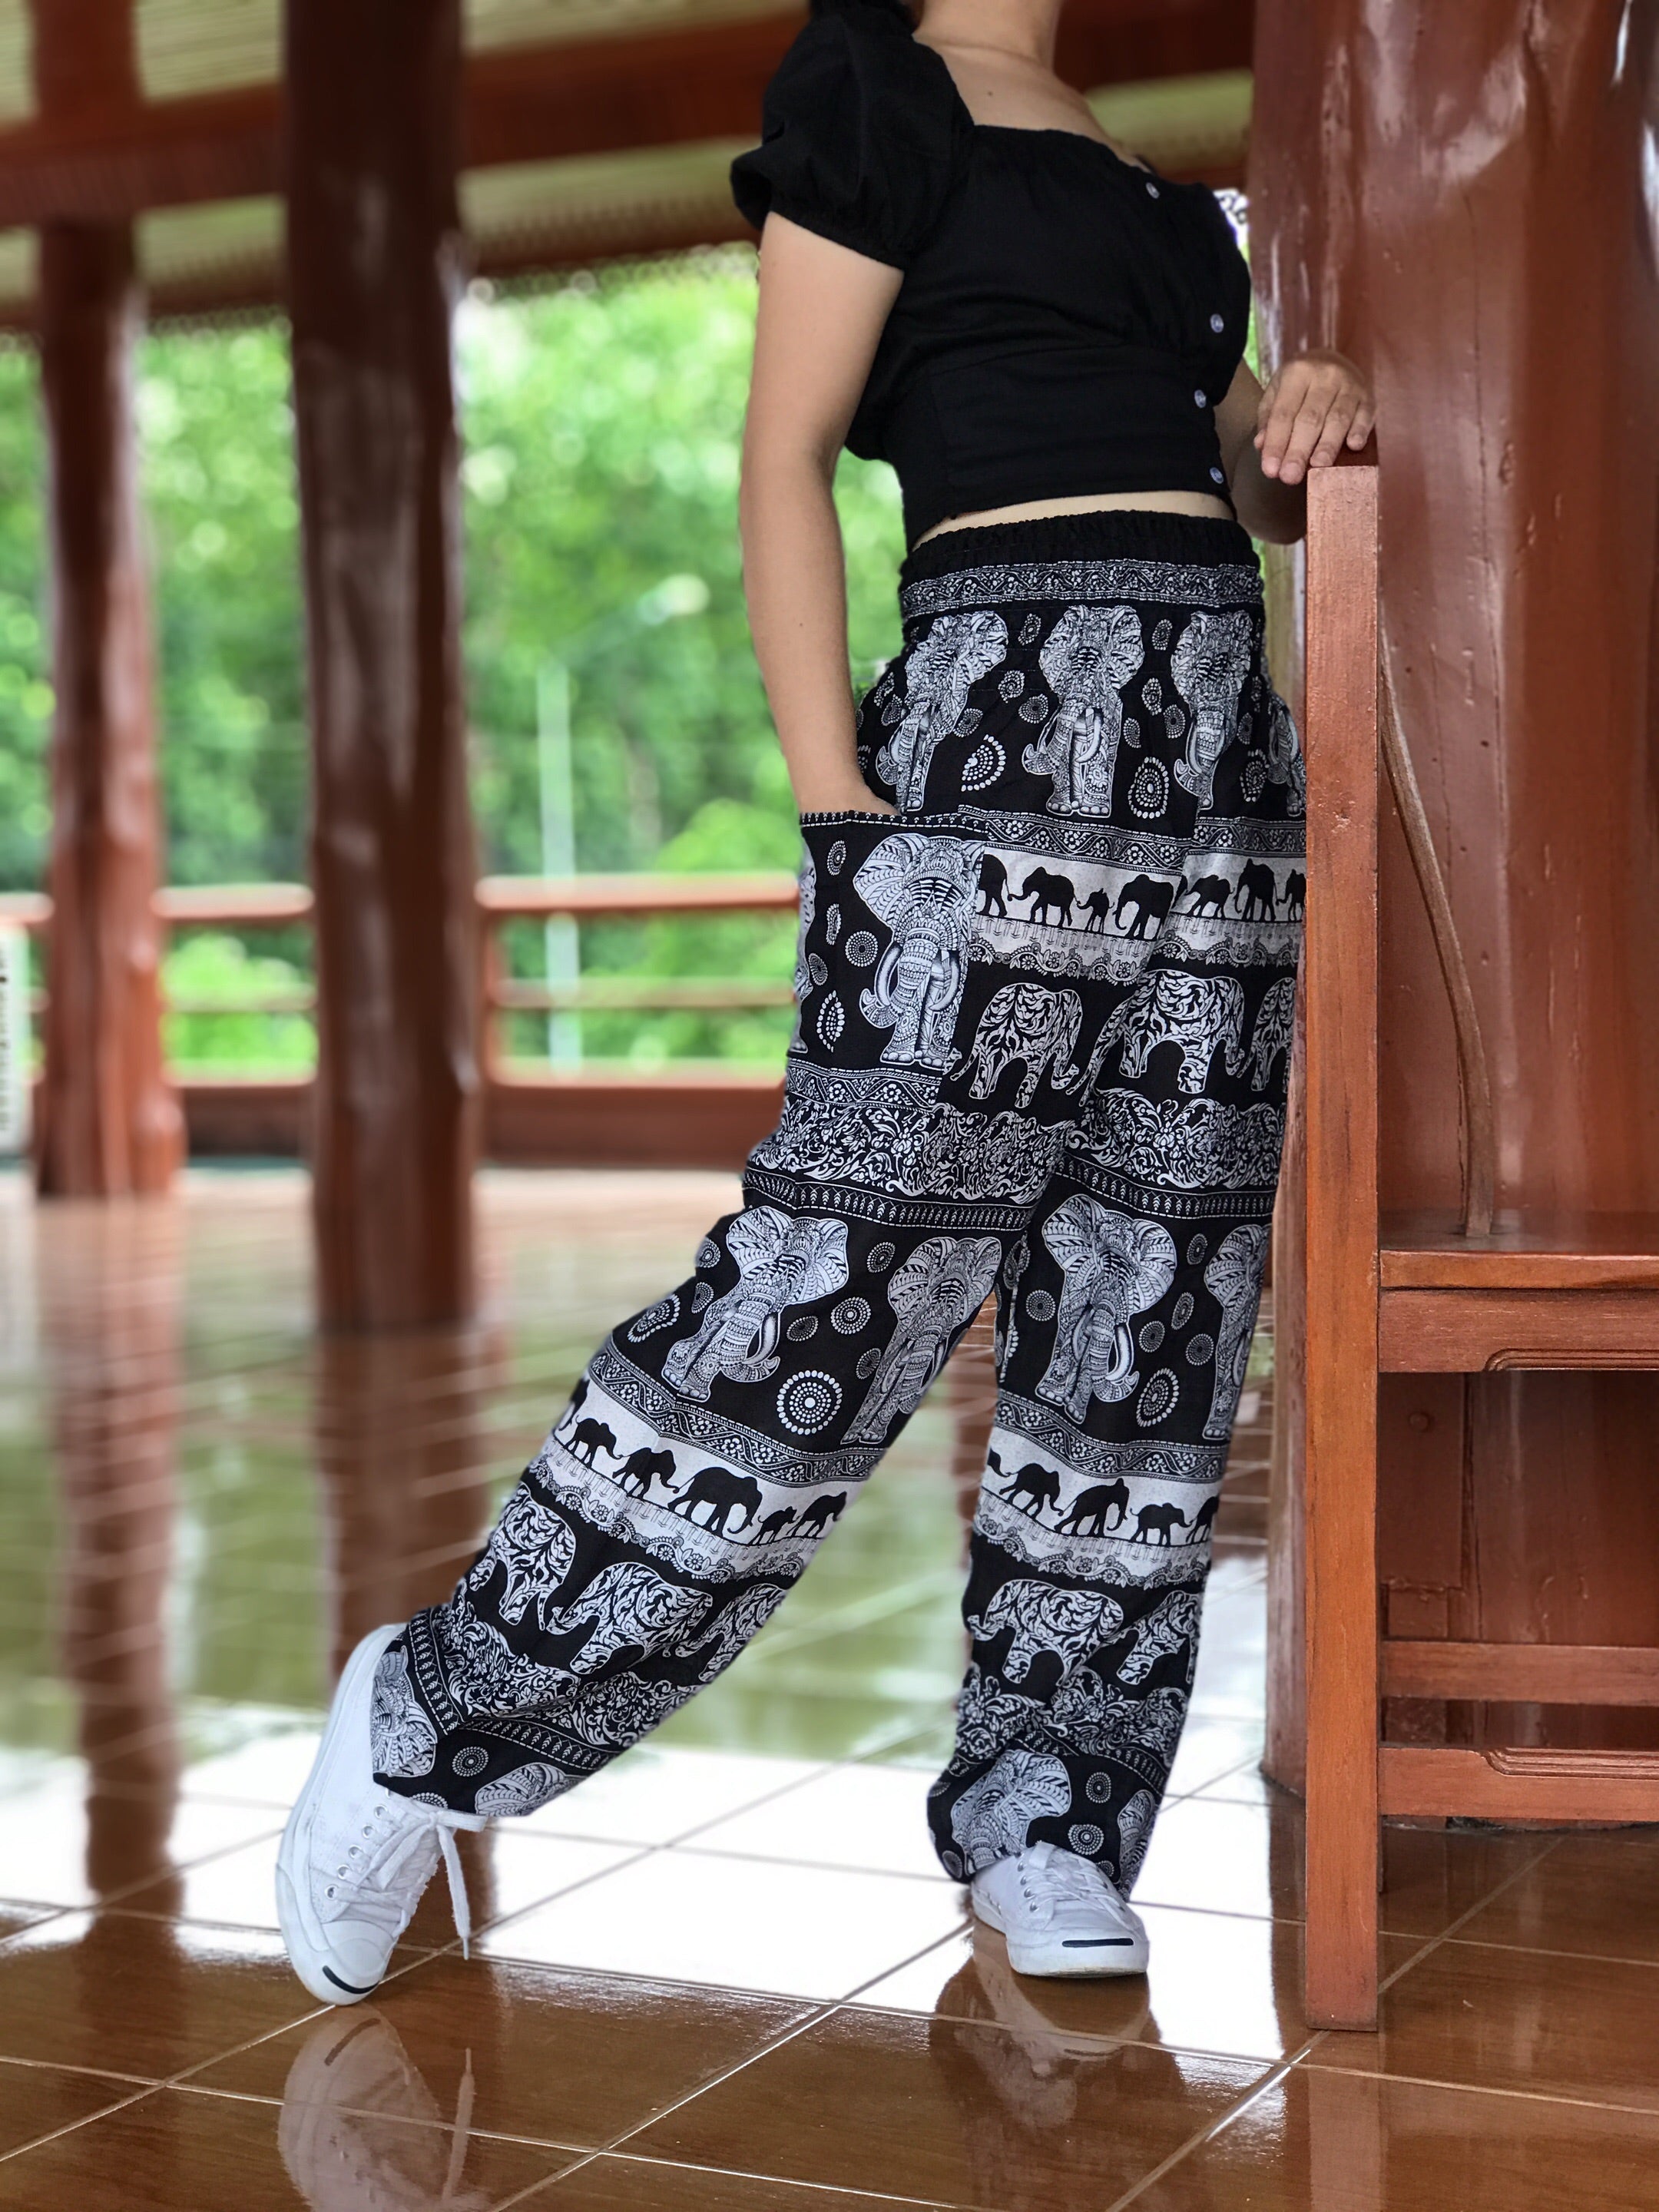 Norma Kamali Trousers and Pants  Buy Norma Kamali Elephant Pant Online   Nykaa Fashion